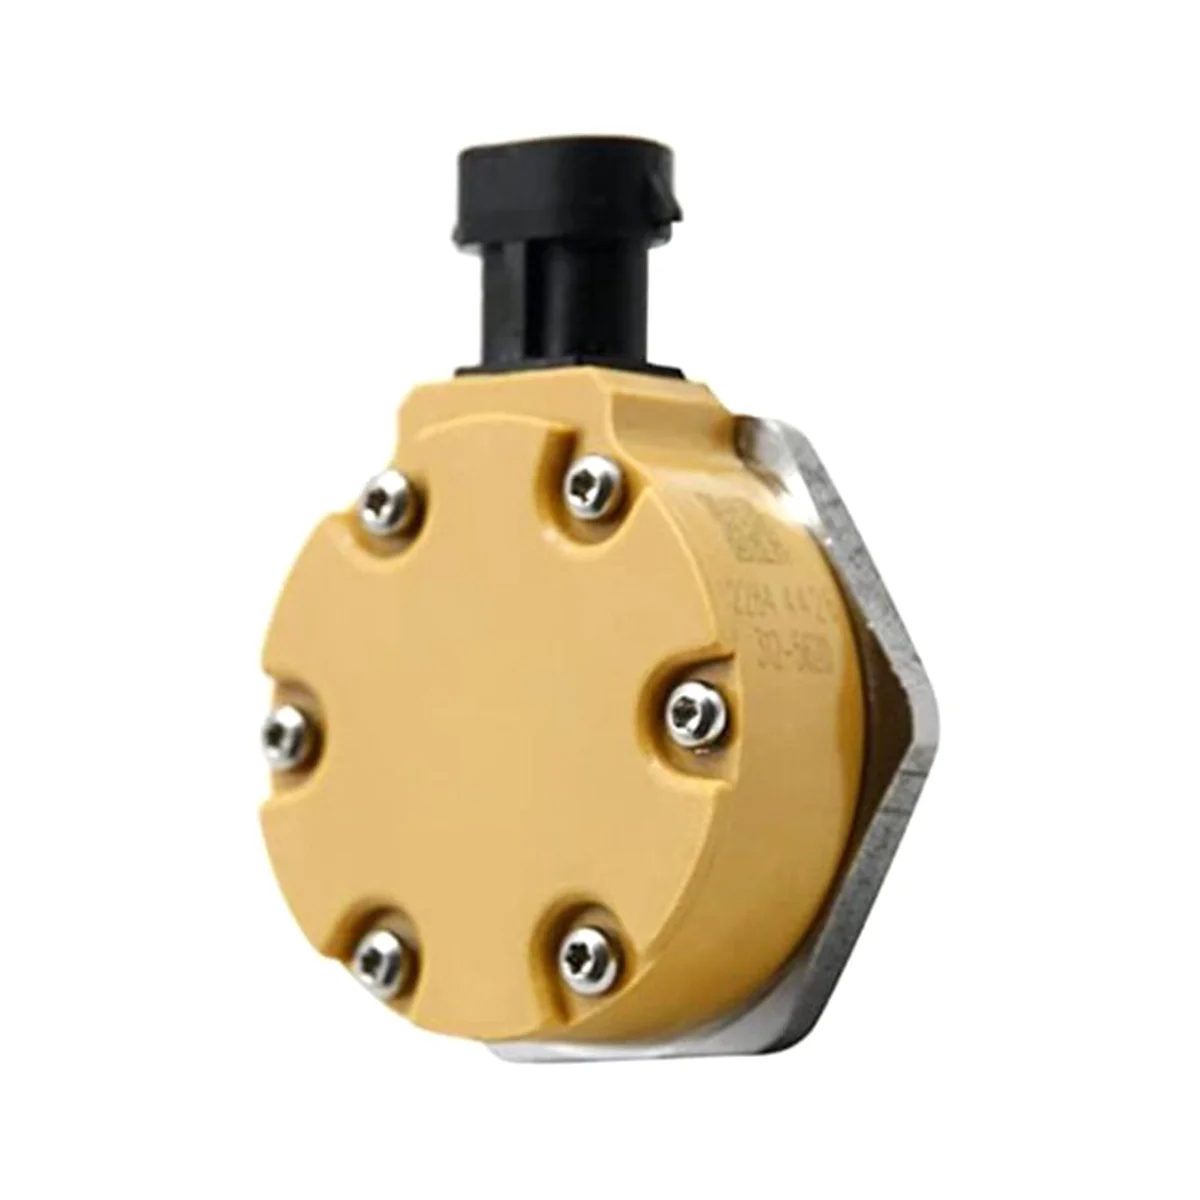 Електронен Електромагнитен клапан, комплект за помпа Caterpillar 320D 326-4635 C6.6 C6.4 за PERKINS/ CAT 1106 312-5620